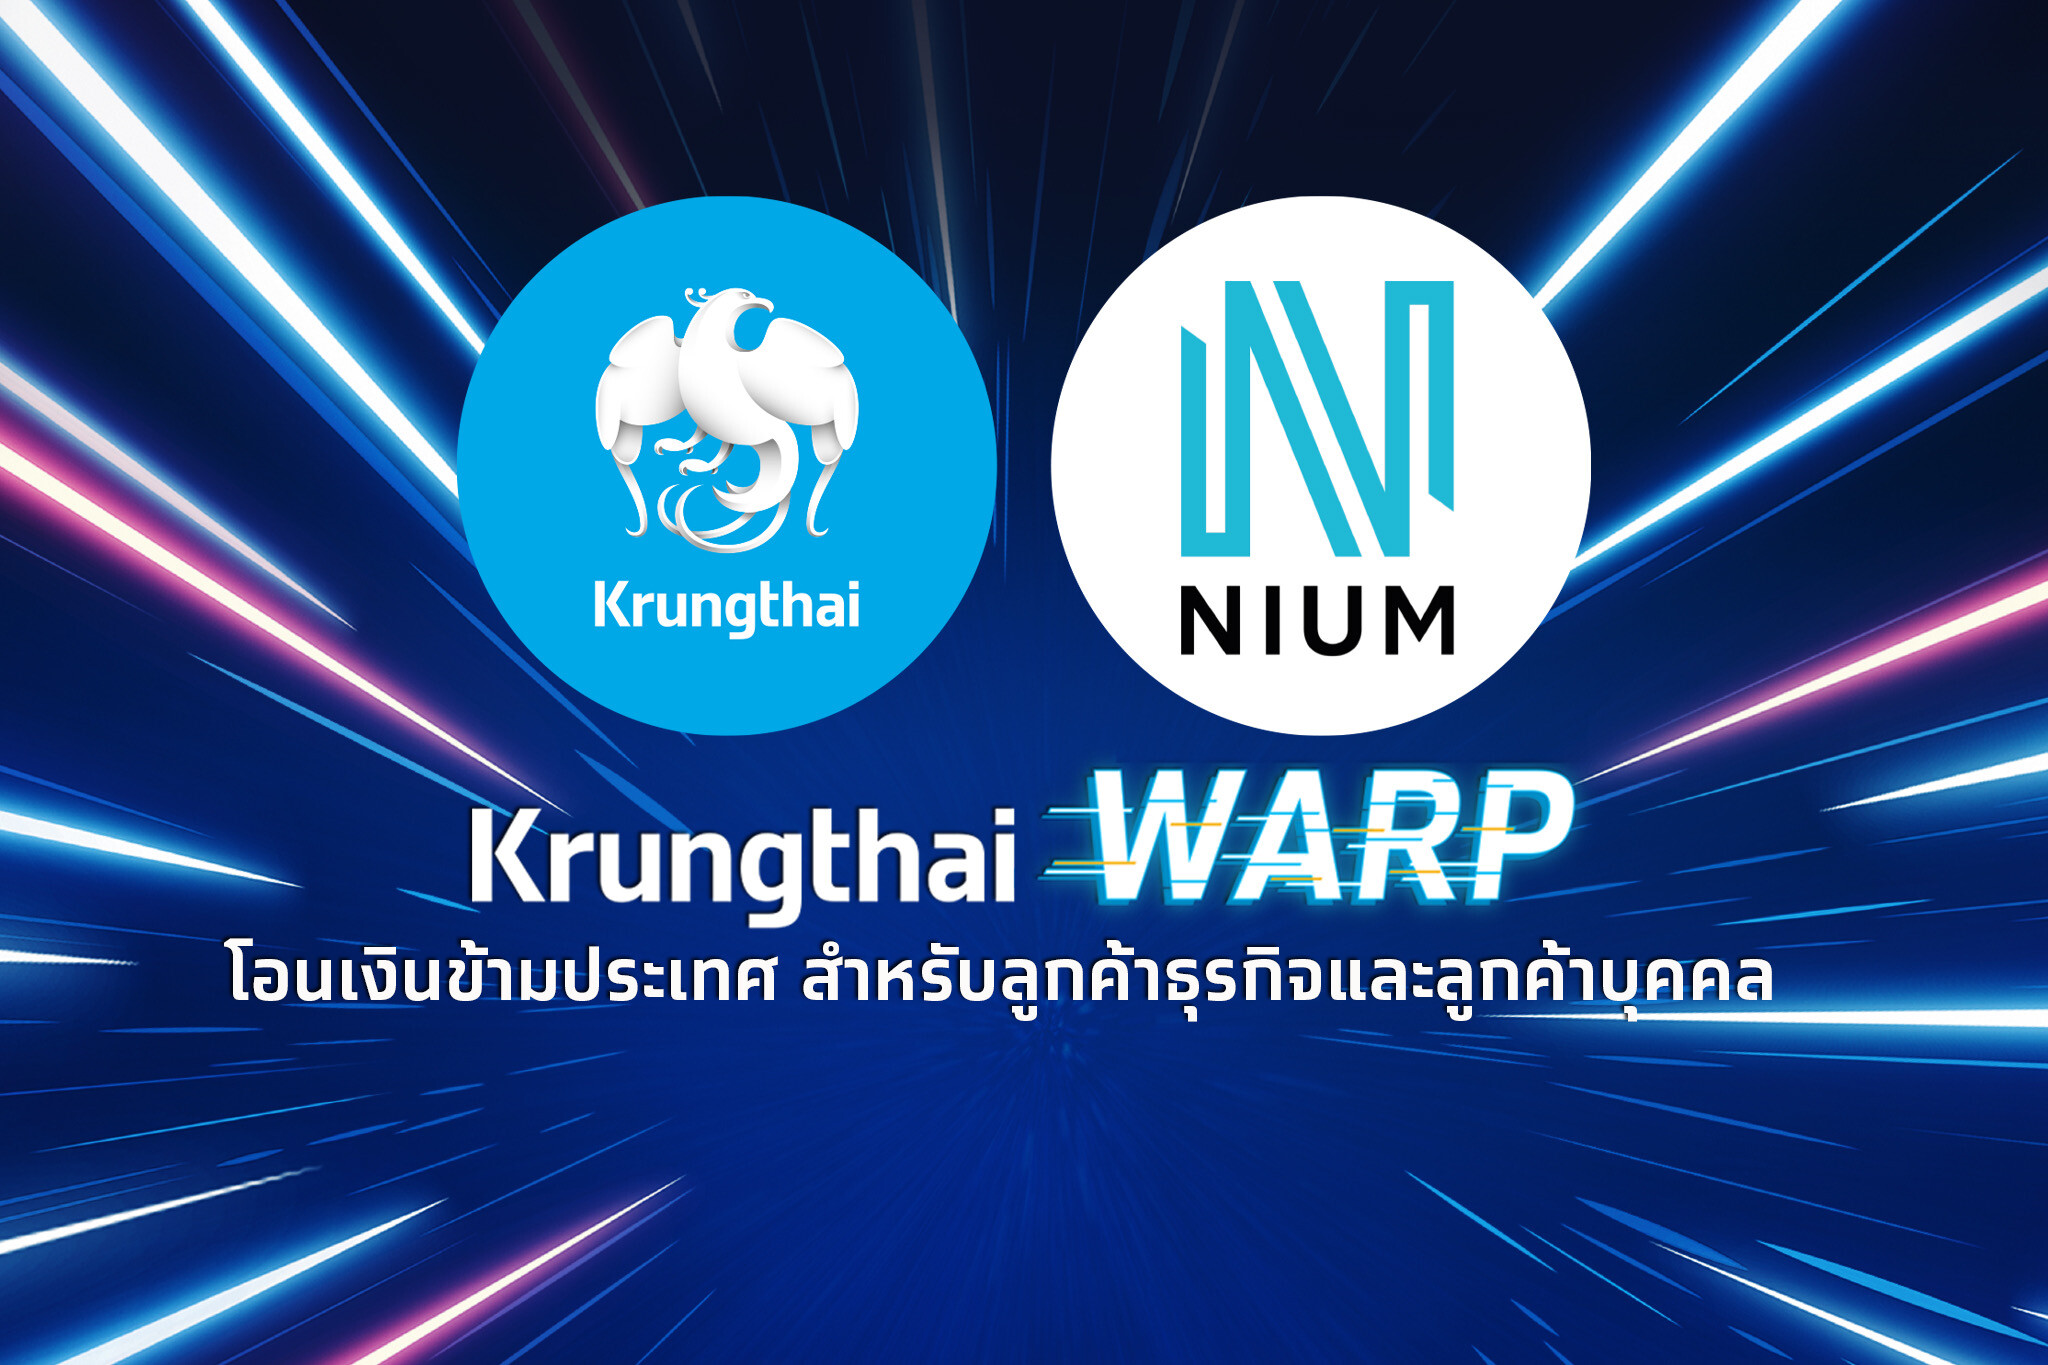 "กรุงไทย-Nium" ยกระดับบริการ "Krungthai WARP" โอนเงินข้ามประเทศ "ถูก เร็ว เรทดี" สำหรับลูกค้าธุรกิจและลูกค้าบุคคล